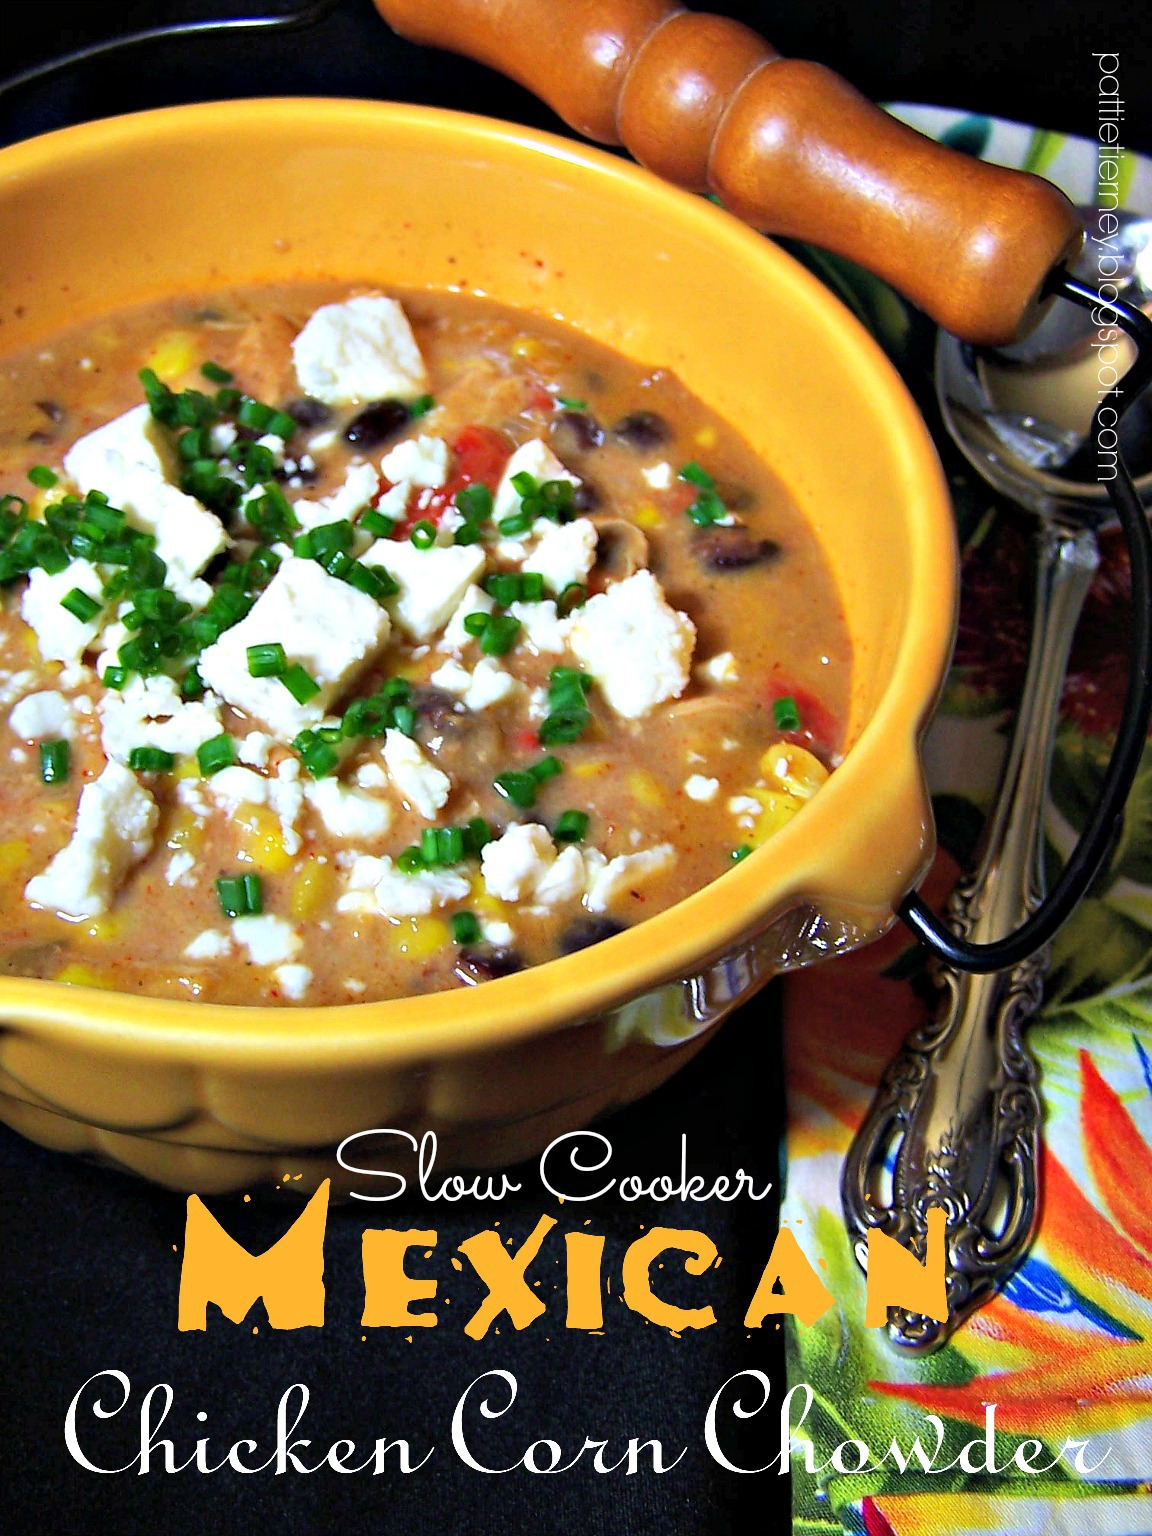 Olla-Podrida: Mexican Chicken Corn Chowder